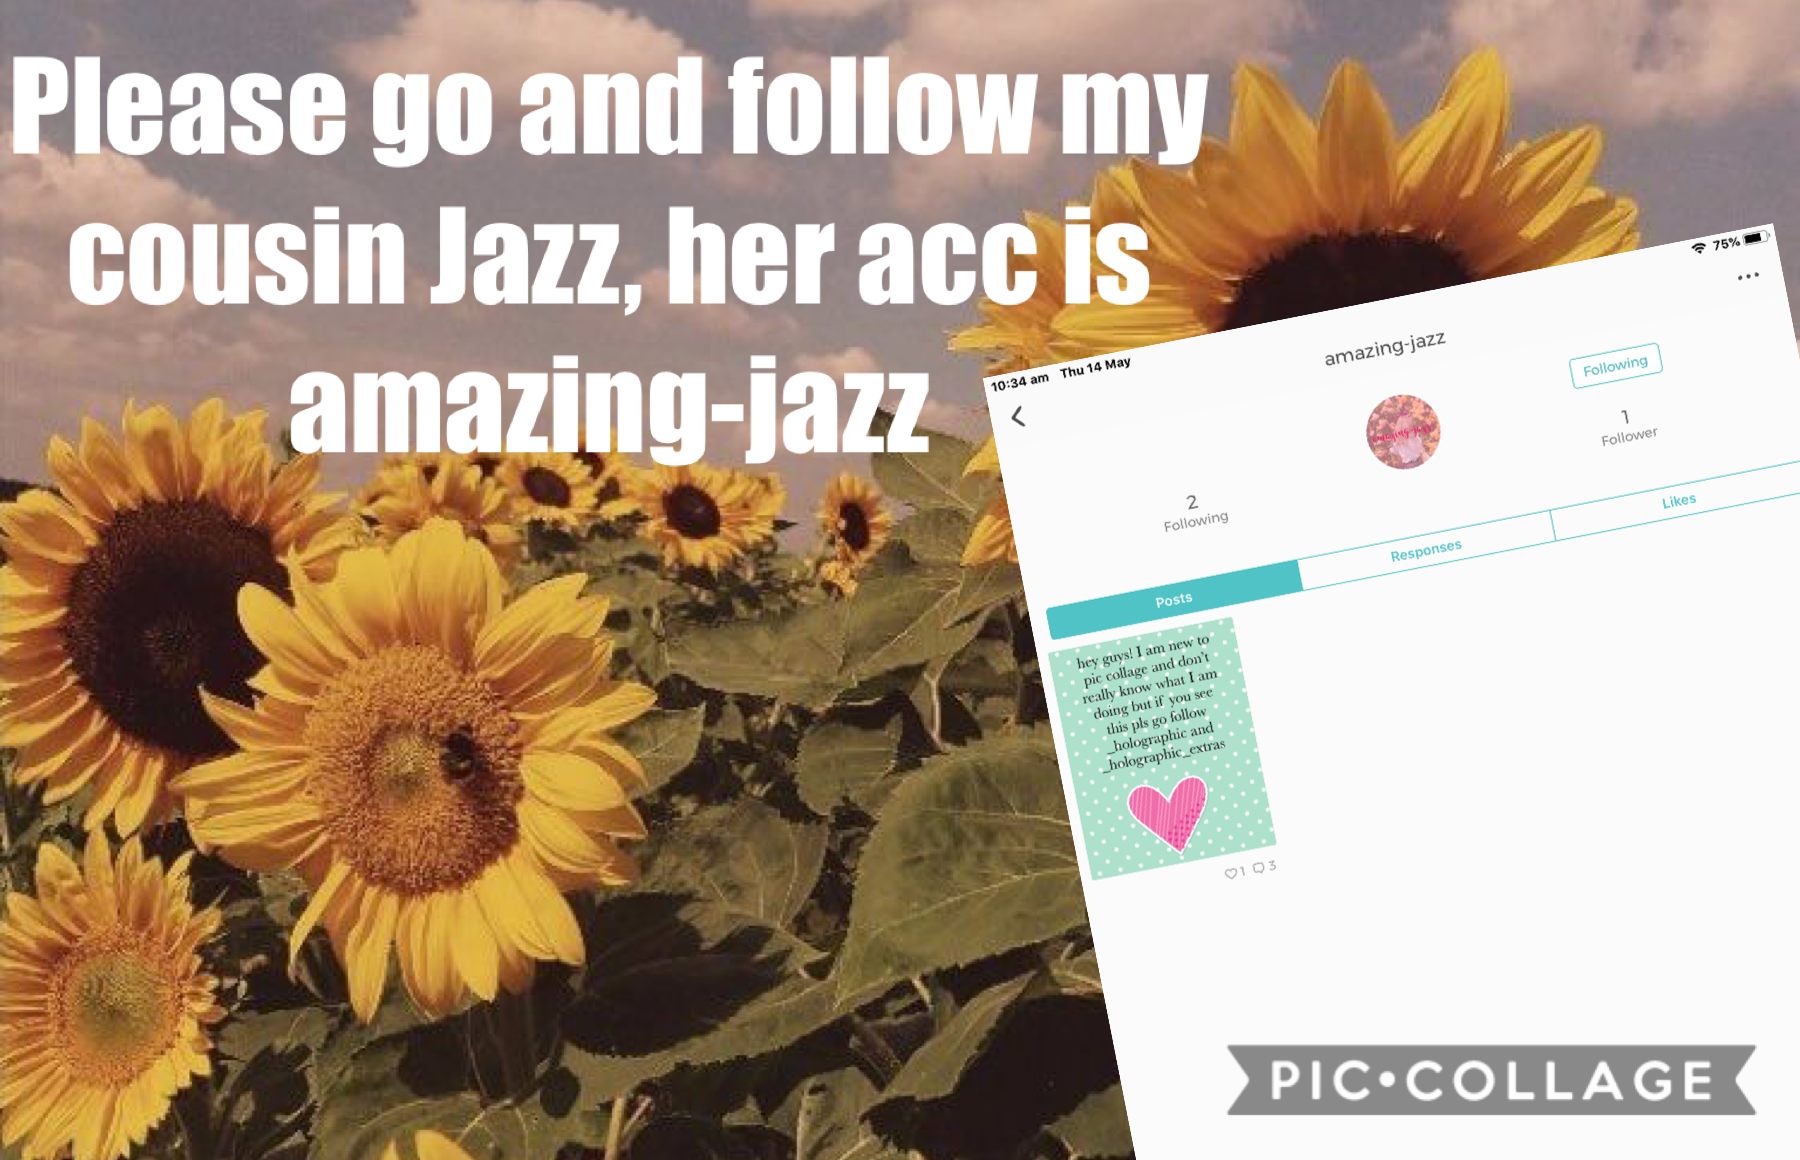 Please go follow amazing-jazz!